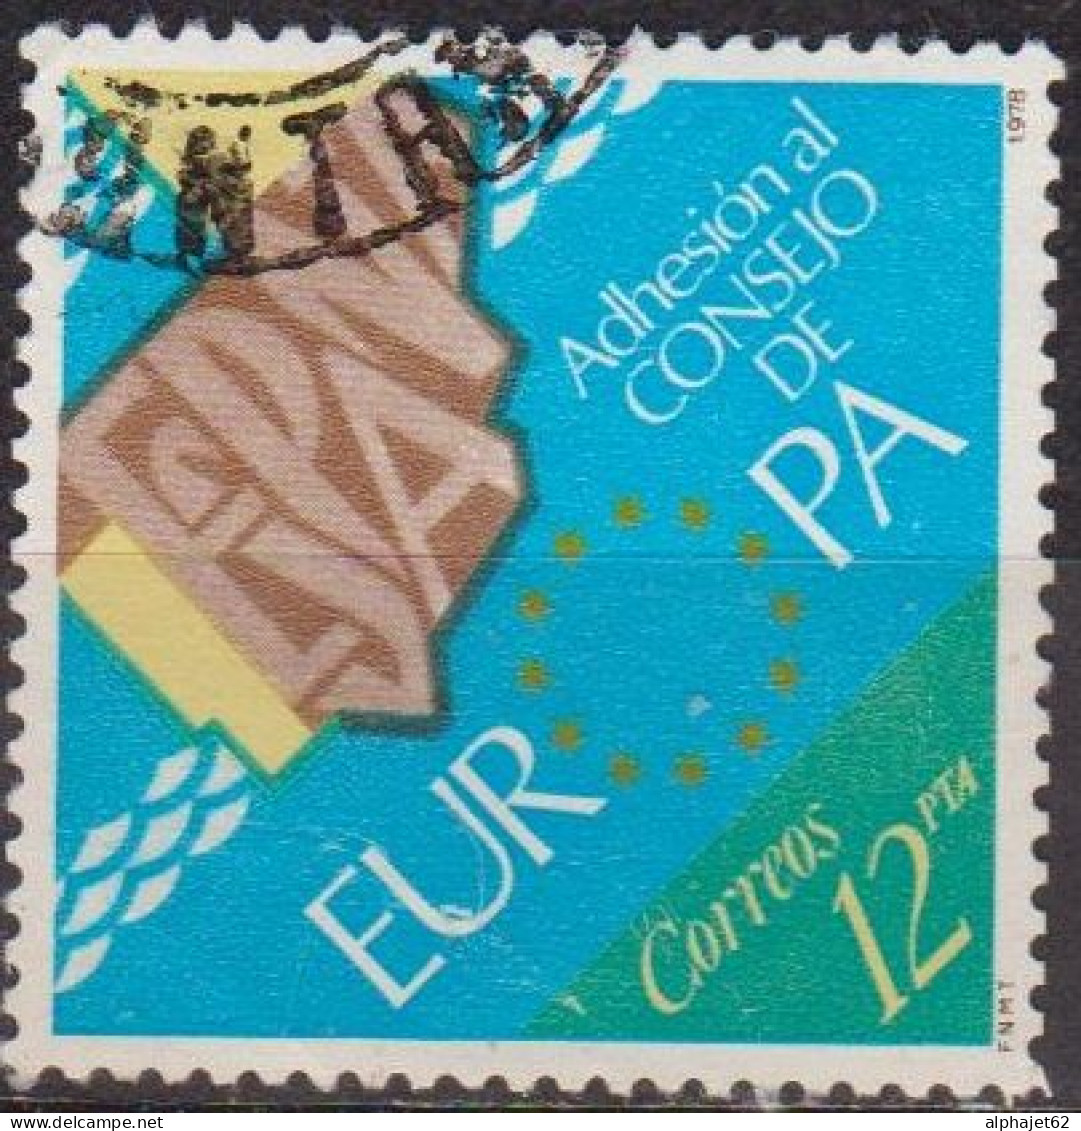 Europe - ESPAGNE - Adhésion Au Conseil De L'Europe - N° 2121 - 1978 - Used Stamps